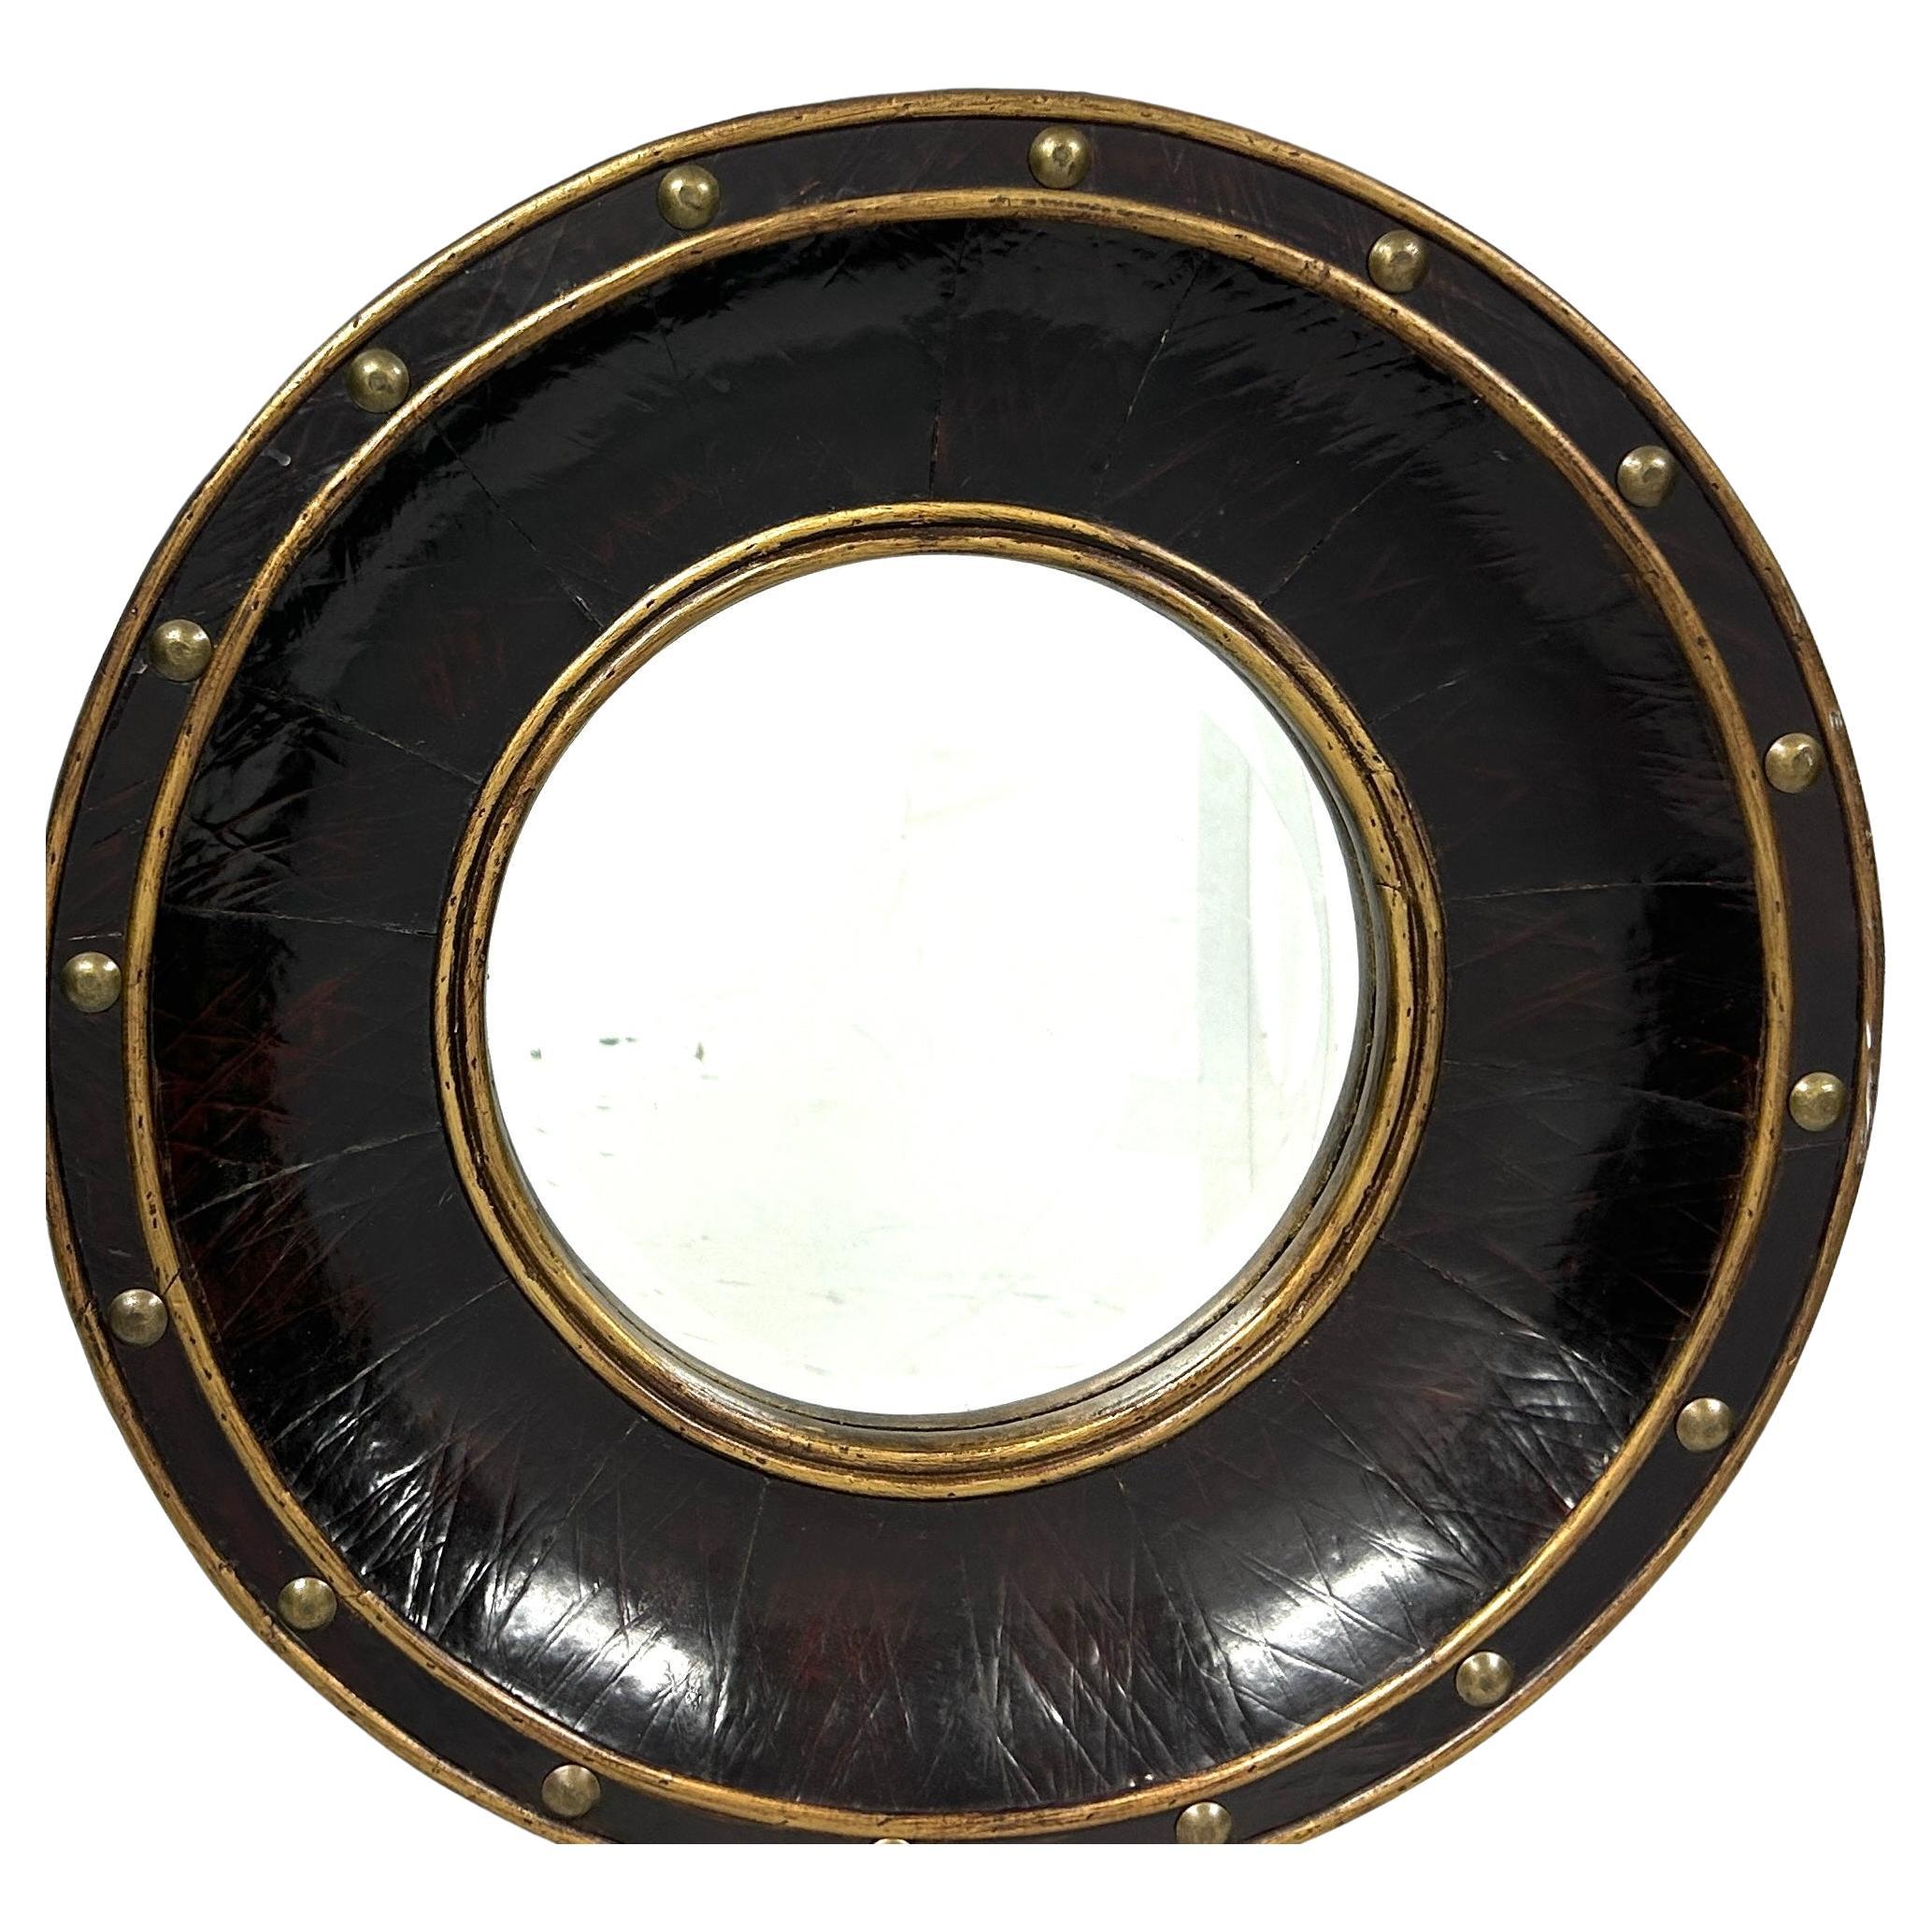 20. Jahrhundert Vintage Kunstleder runden Bullseye Spiegel mit Messing Nieten und trimmen. Der Spiegel hat einen braunen 2,5-Zoll-Rahmen und ist in gutem Zustand ohne Anlaufen oder Entsilberung.